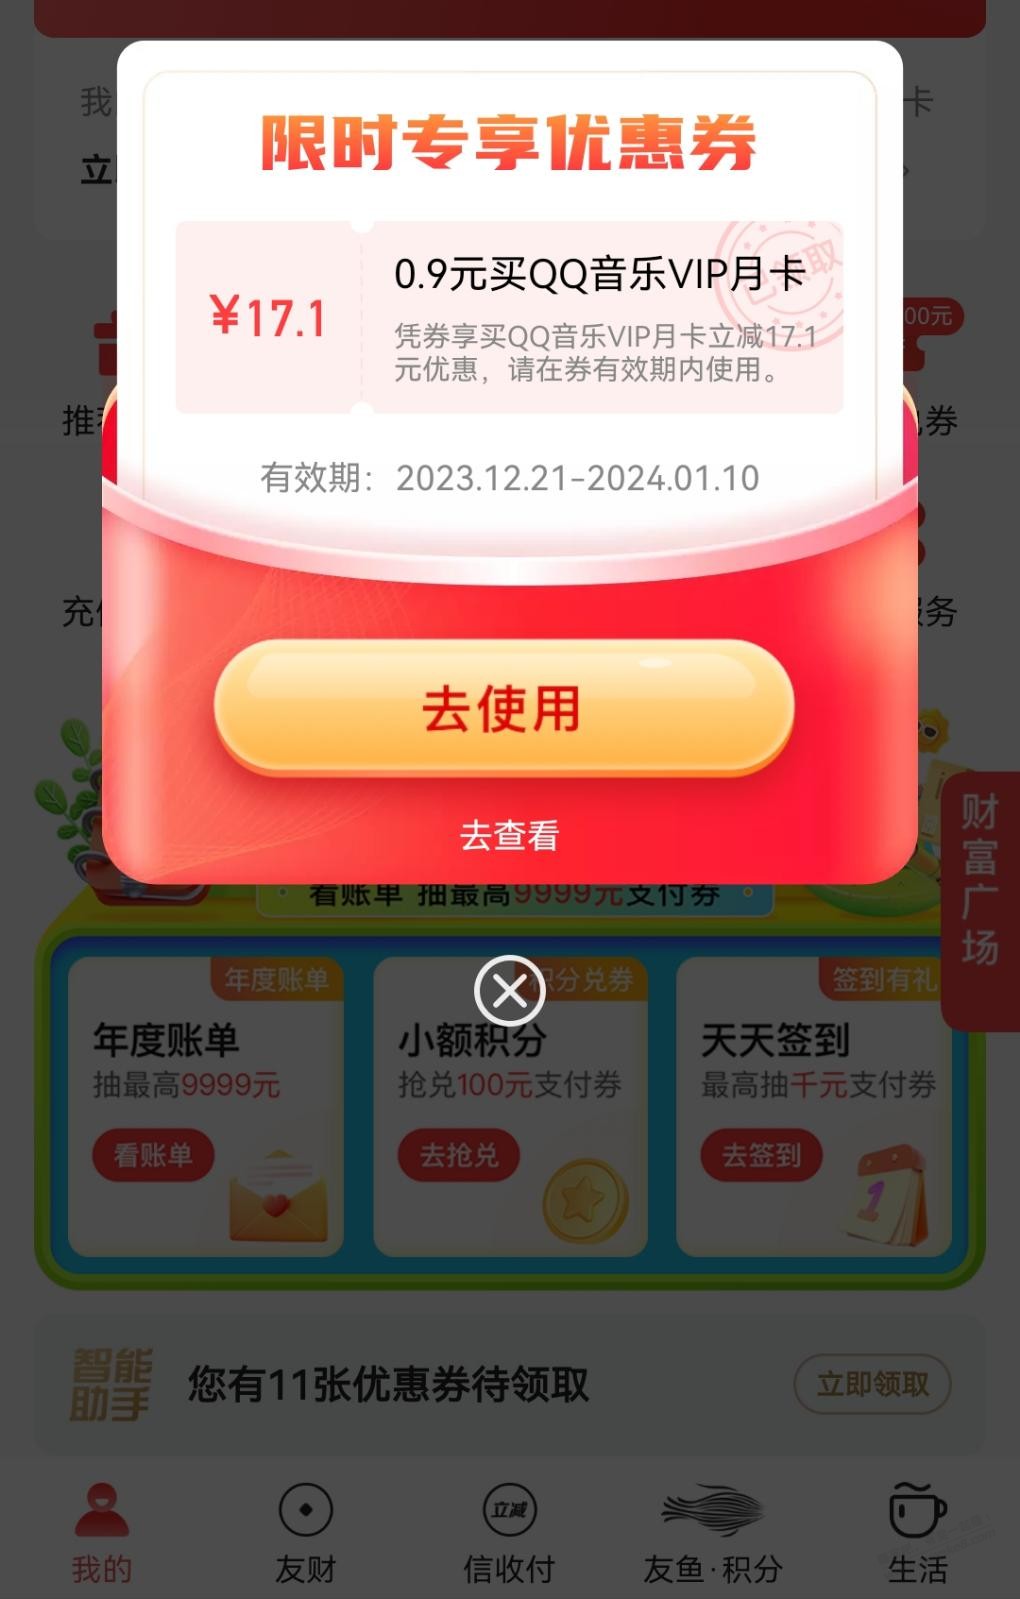 0.9元qq音乐月卡-惠小助(52huixz.com)